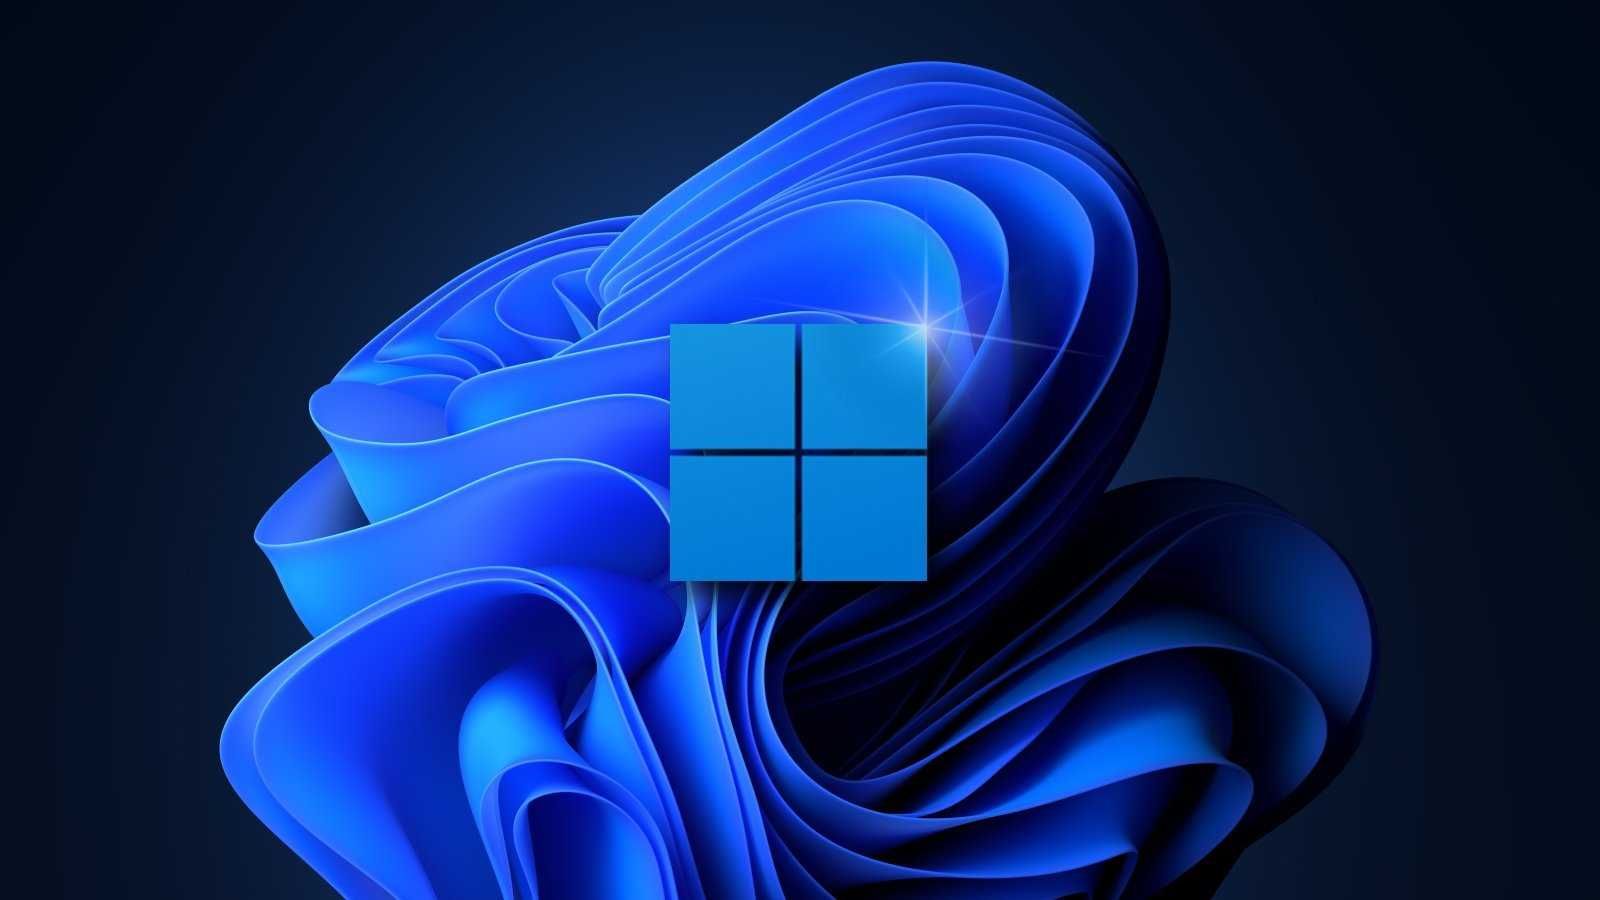 Оновлюватися до Windows 11 чи ні: операційка викликала неоднозначну оцінку експертів - Новини технологій - Техно